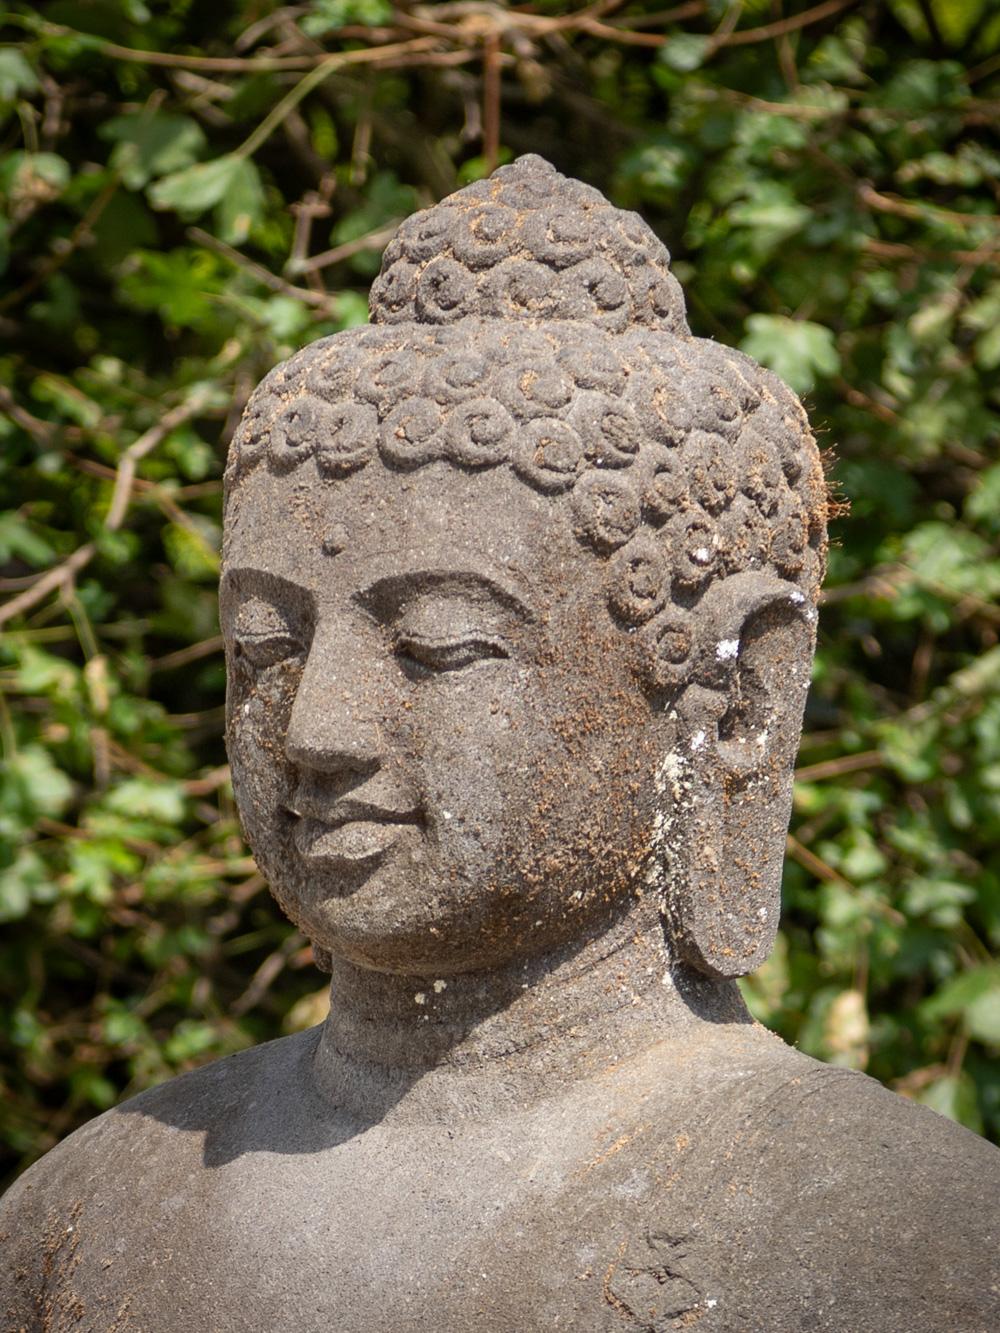 dharmachakra mudra statue